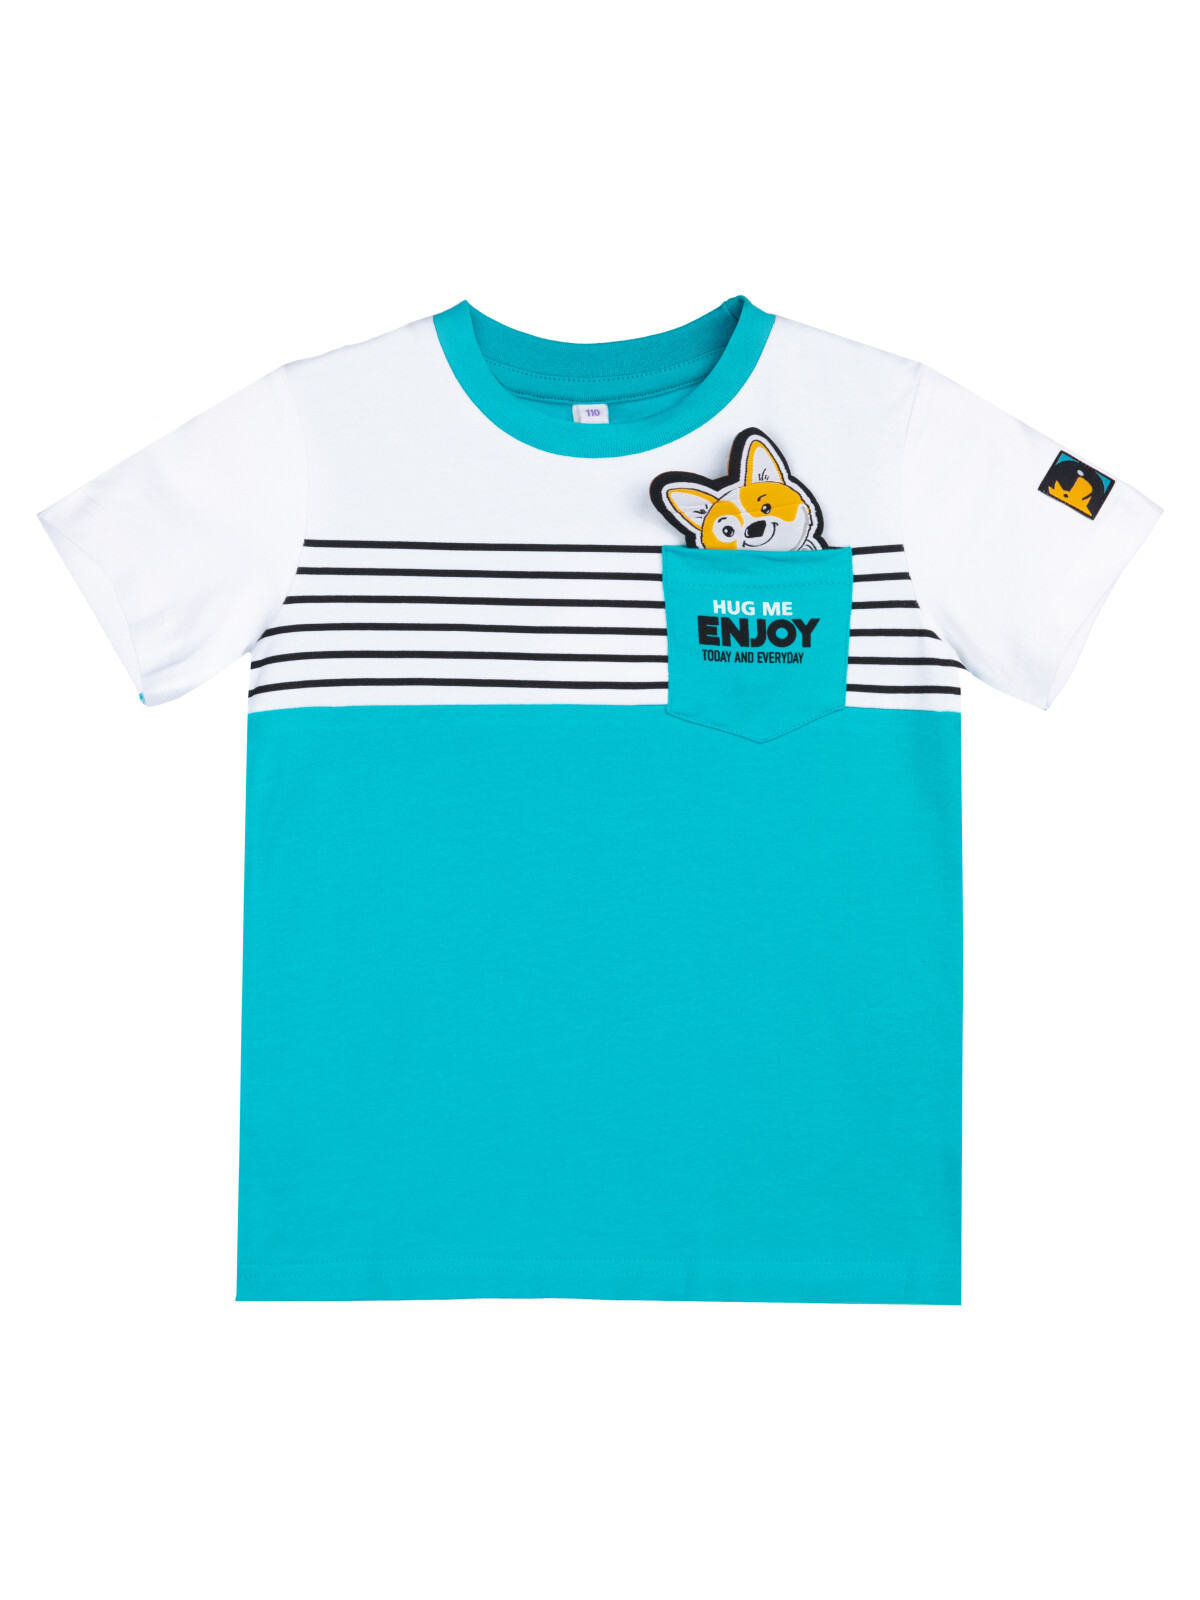 Детская футболка PlayToday 12312074, цвета голубой, белый, разноцветный, размер 104.